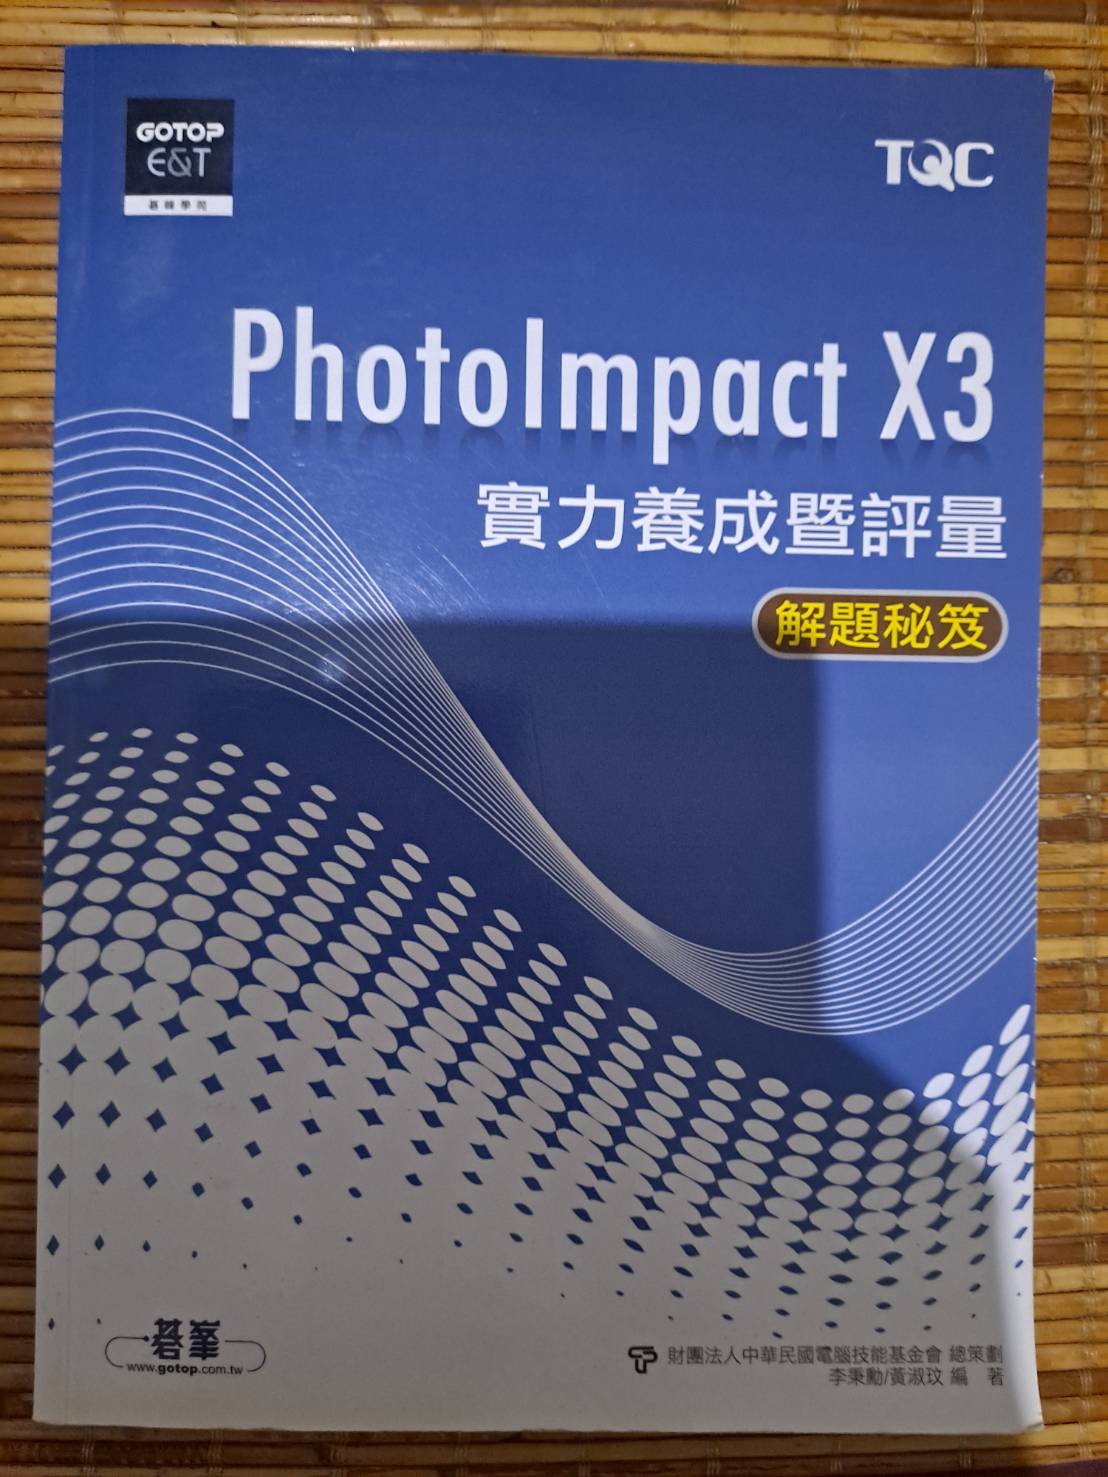 PhotoImpact X3 實力養成暨評量解題秘笈 詳細資料